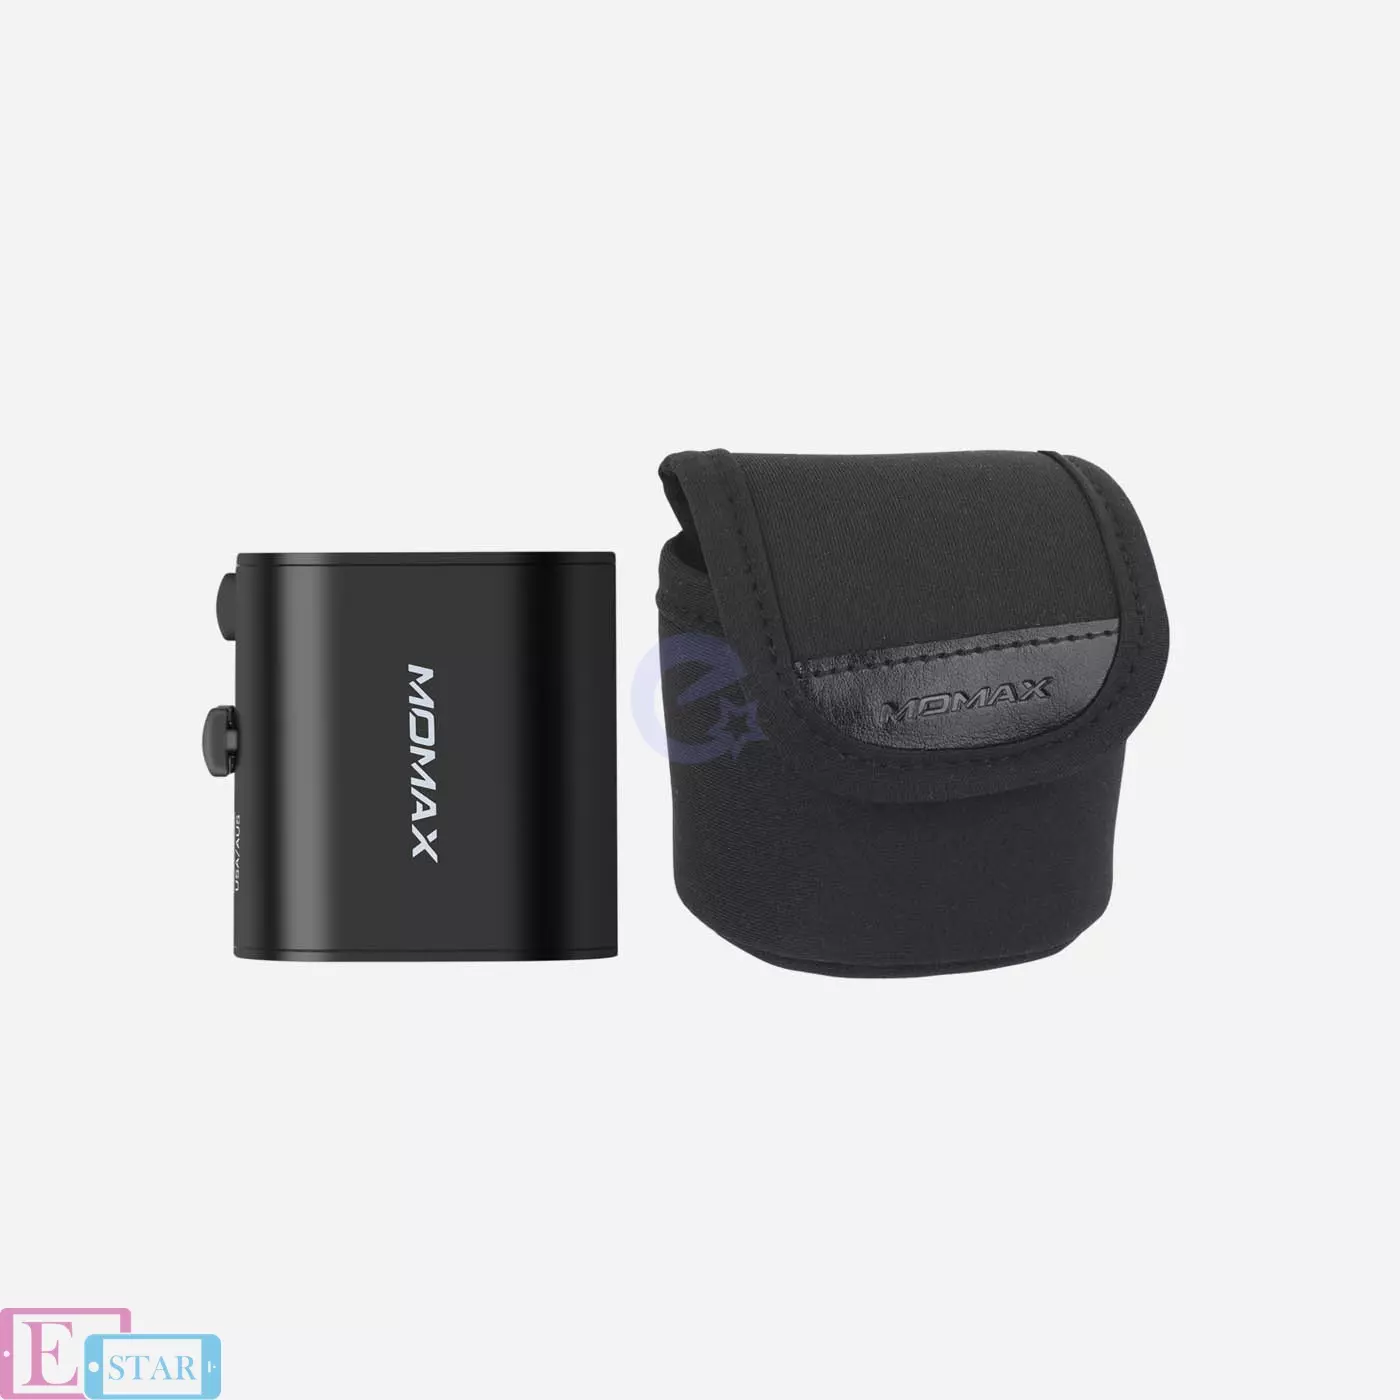 Зарядное устройство Momax 1-World Mini AC Travel Adapter Black (Черный) UA2